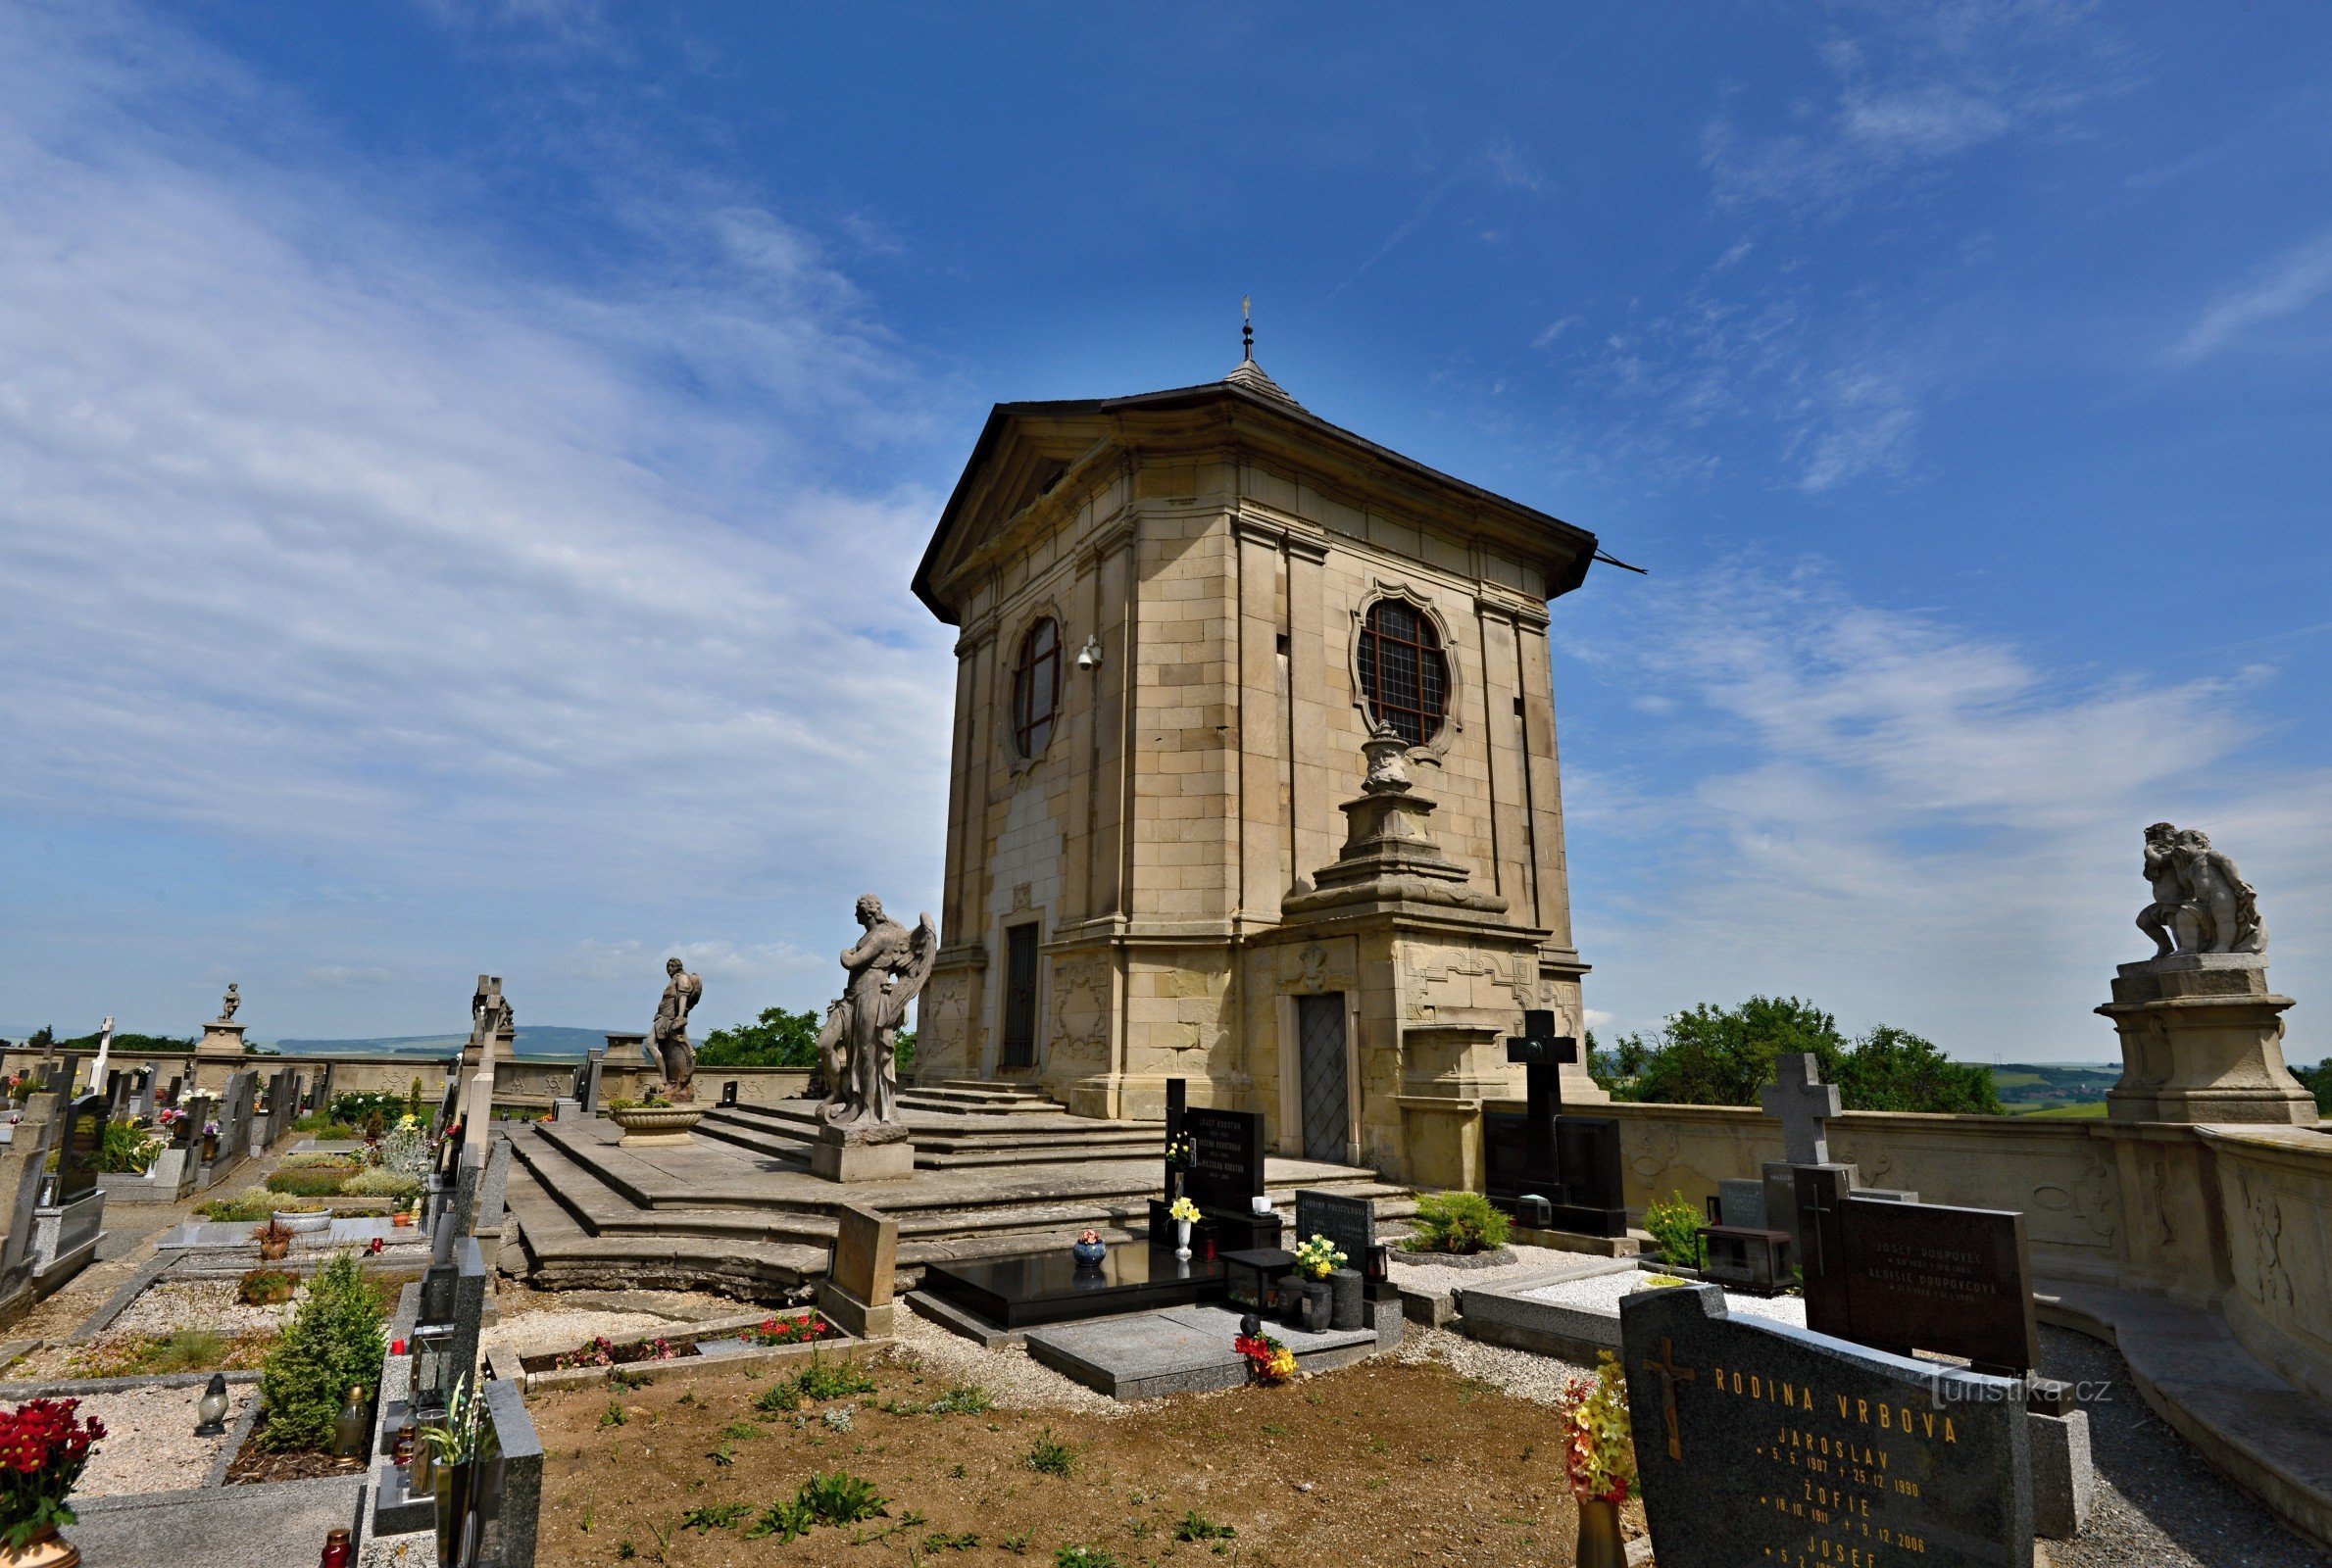 Atiradores: cemitério barroco